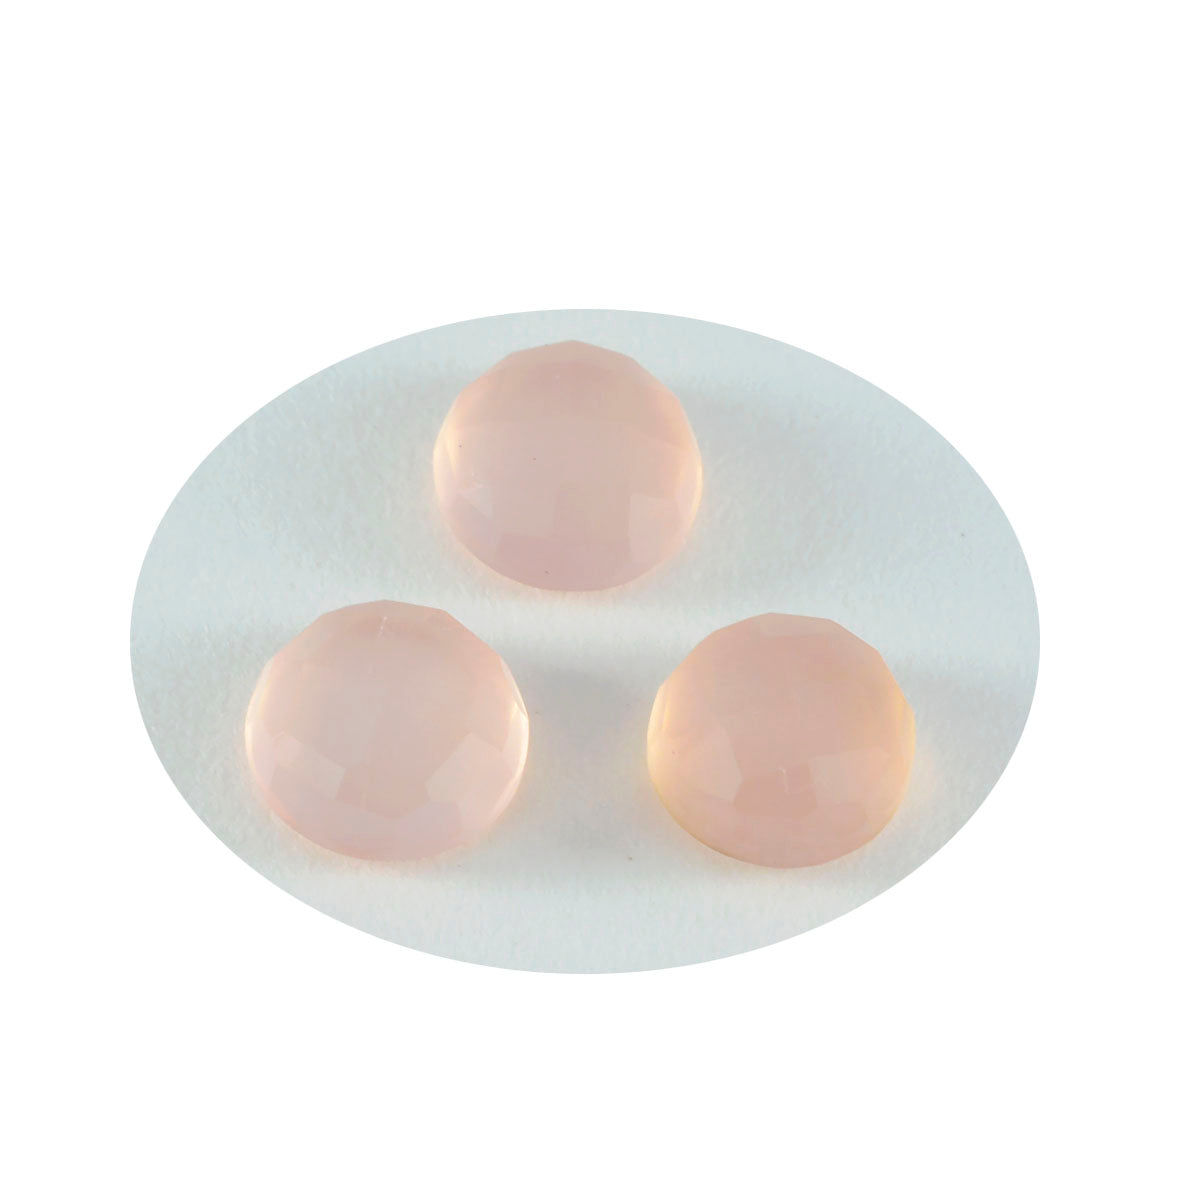 riyogems 1 pz quarzo rosa sfaccettato 15x15 mm forma rotonda gemme sfuse di eccellente qualità